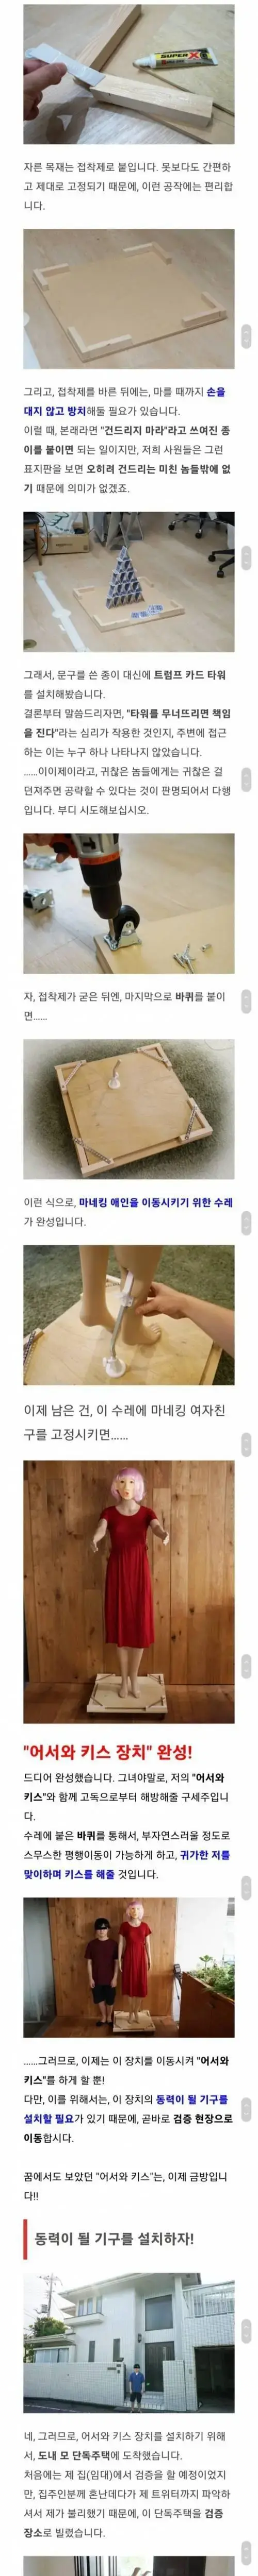 모태솔로를 위한 자동키스장치 | mbong.kr 엠봉